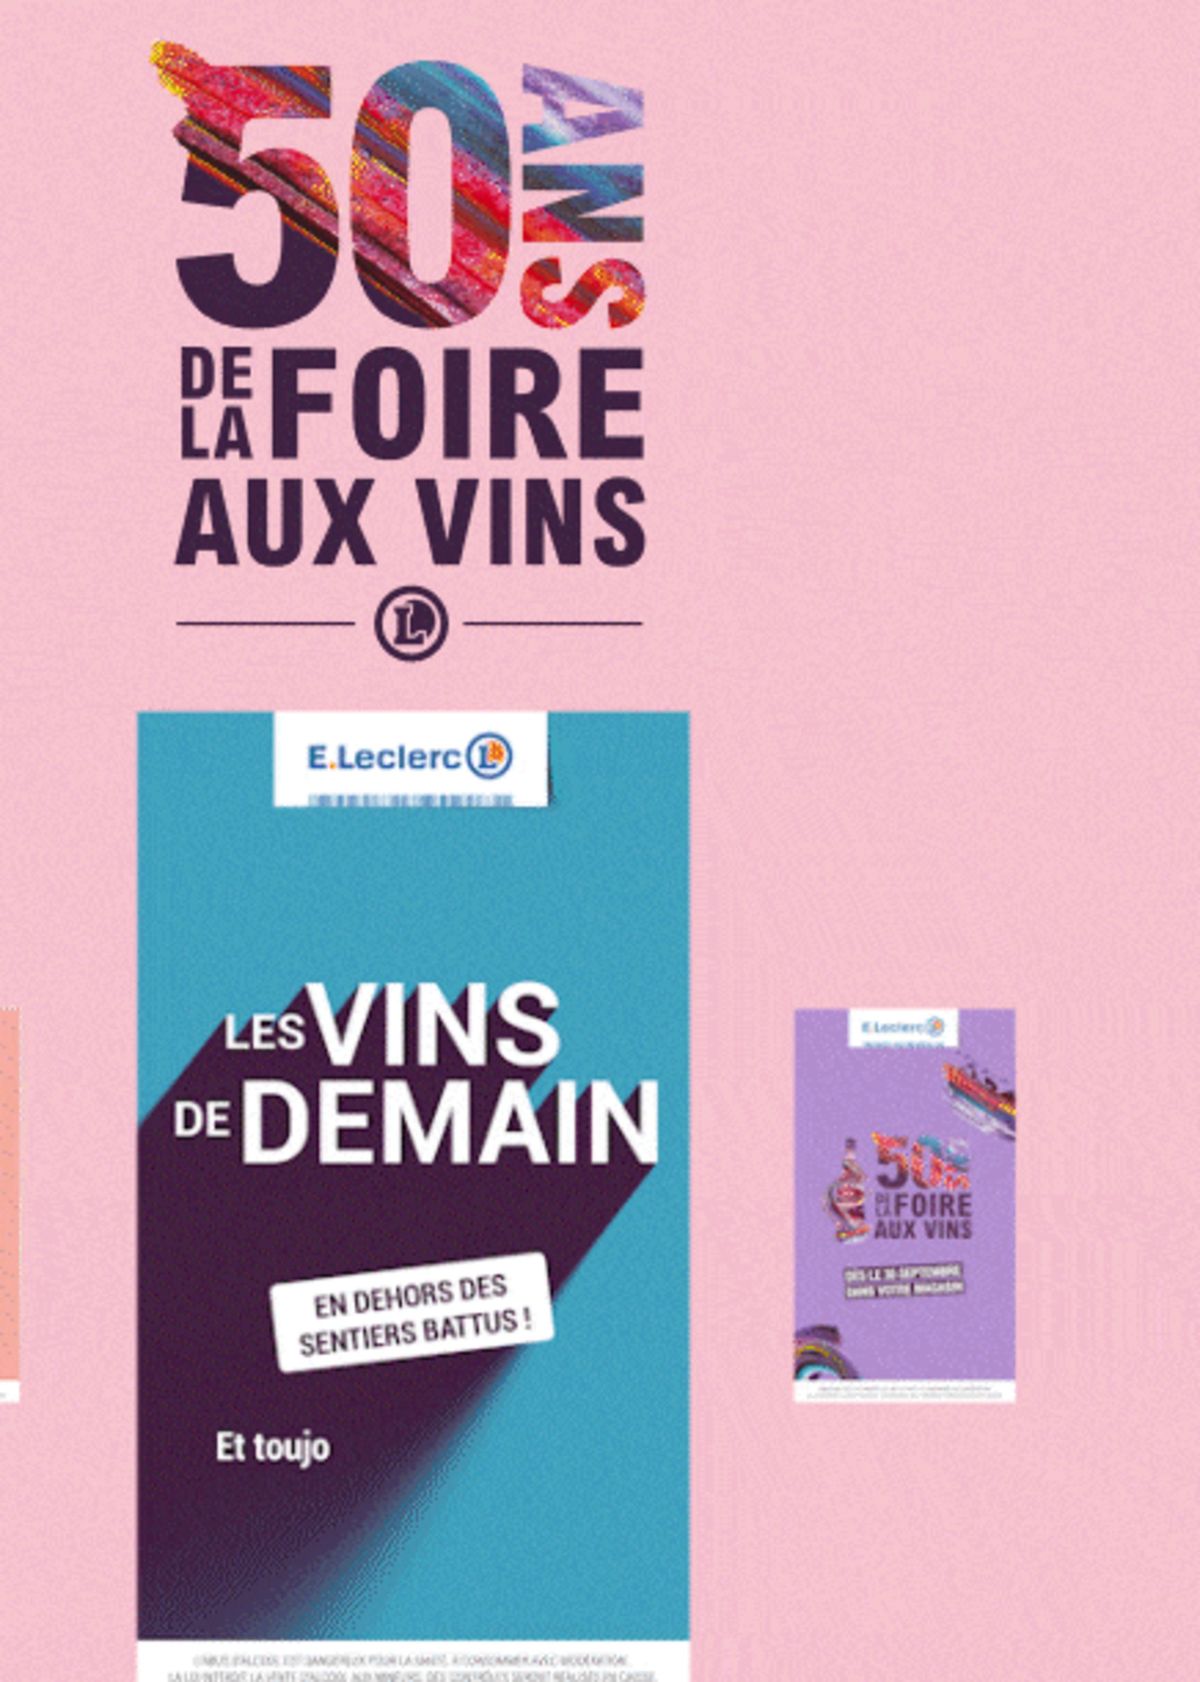 Catalogue Foire Aux Vins - Mixte, page 01184